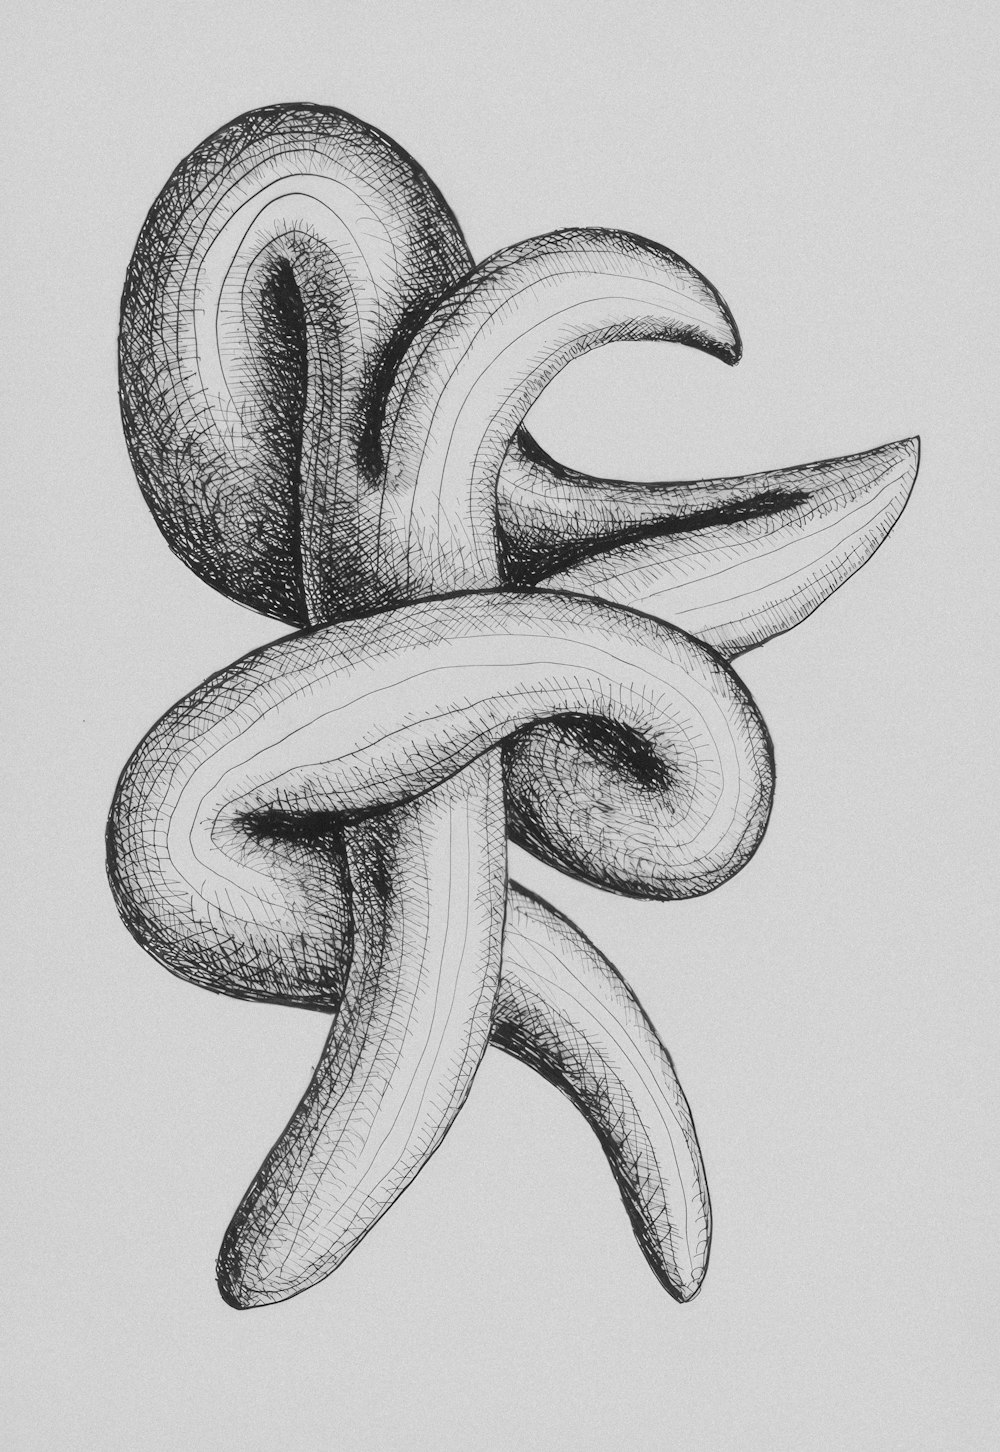 뱀의 흑백 그림